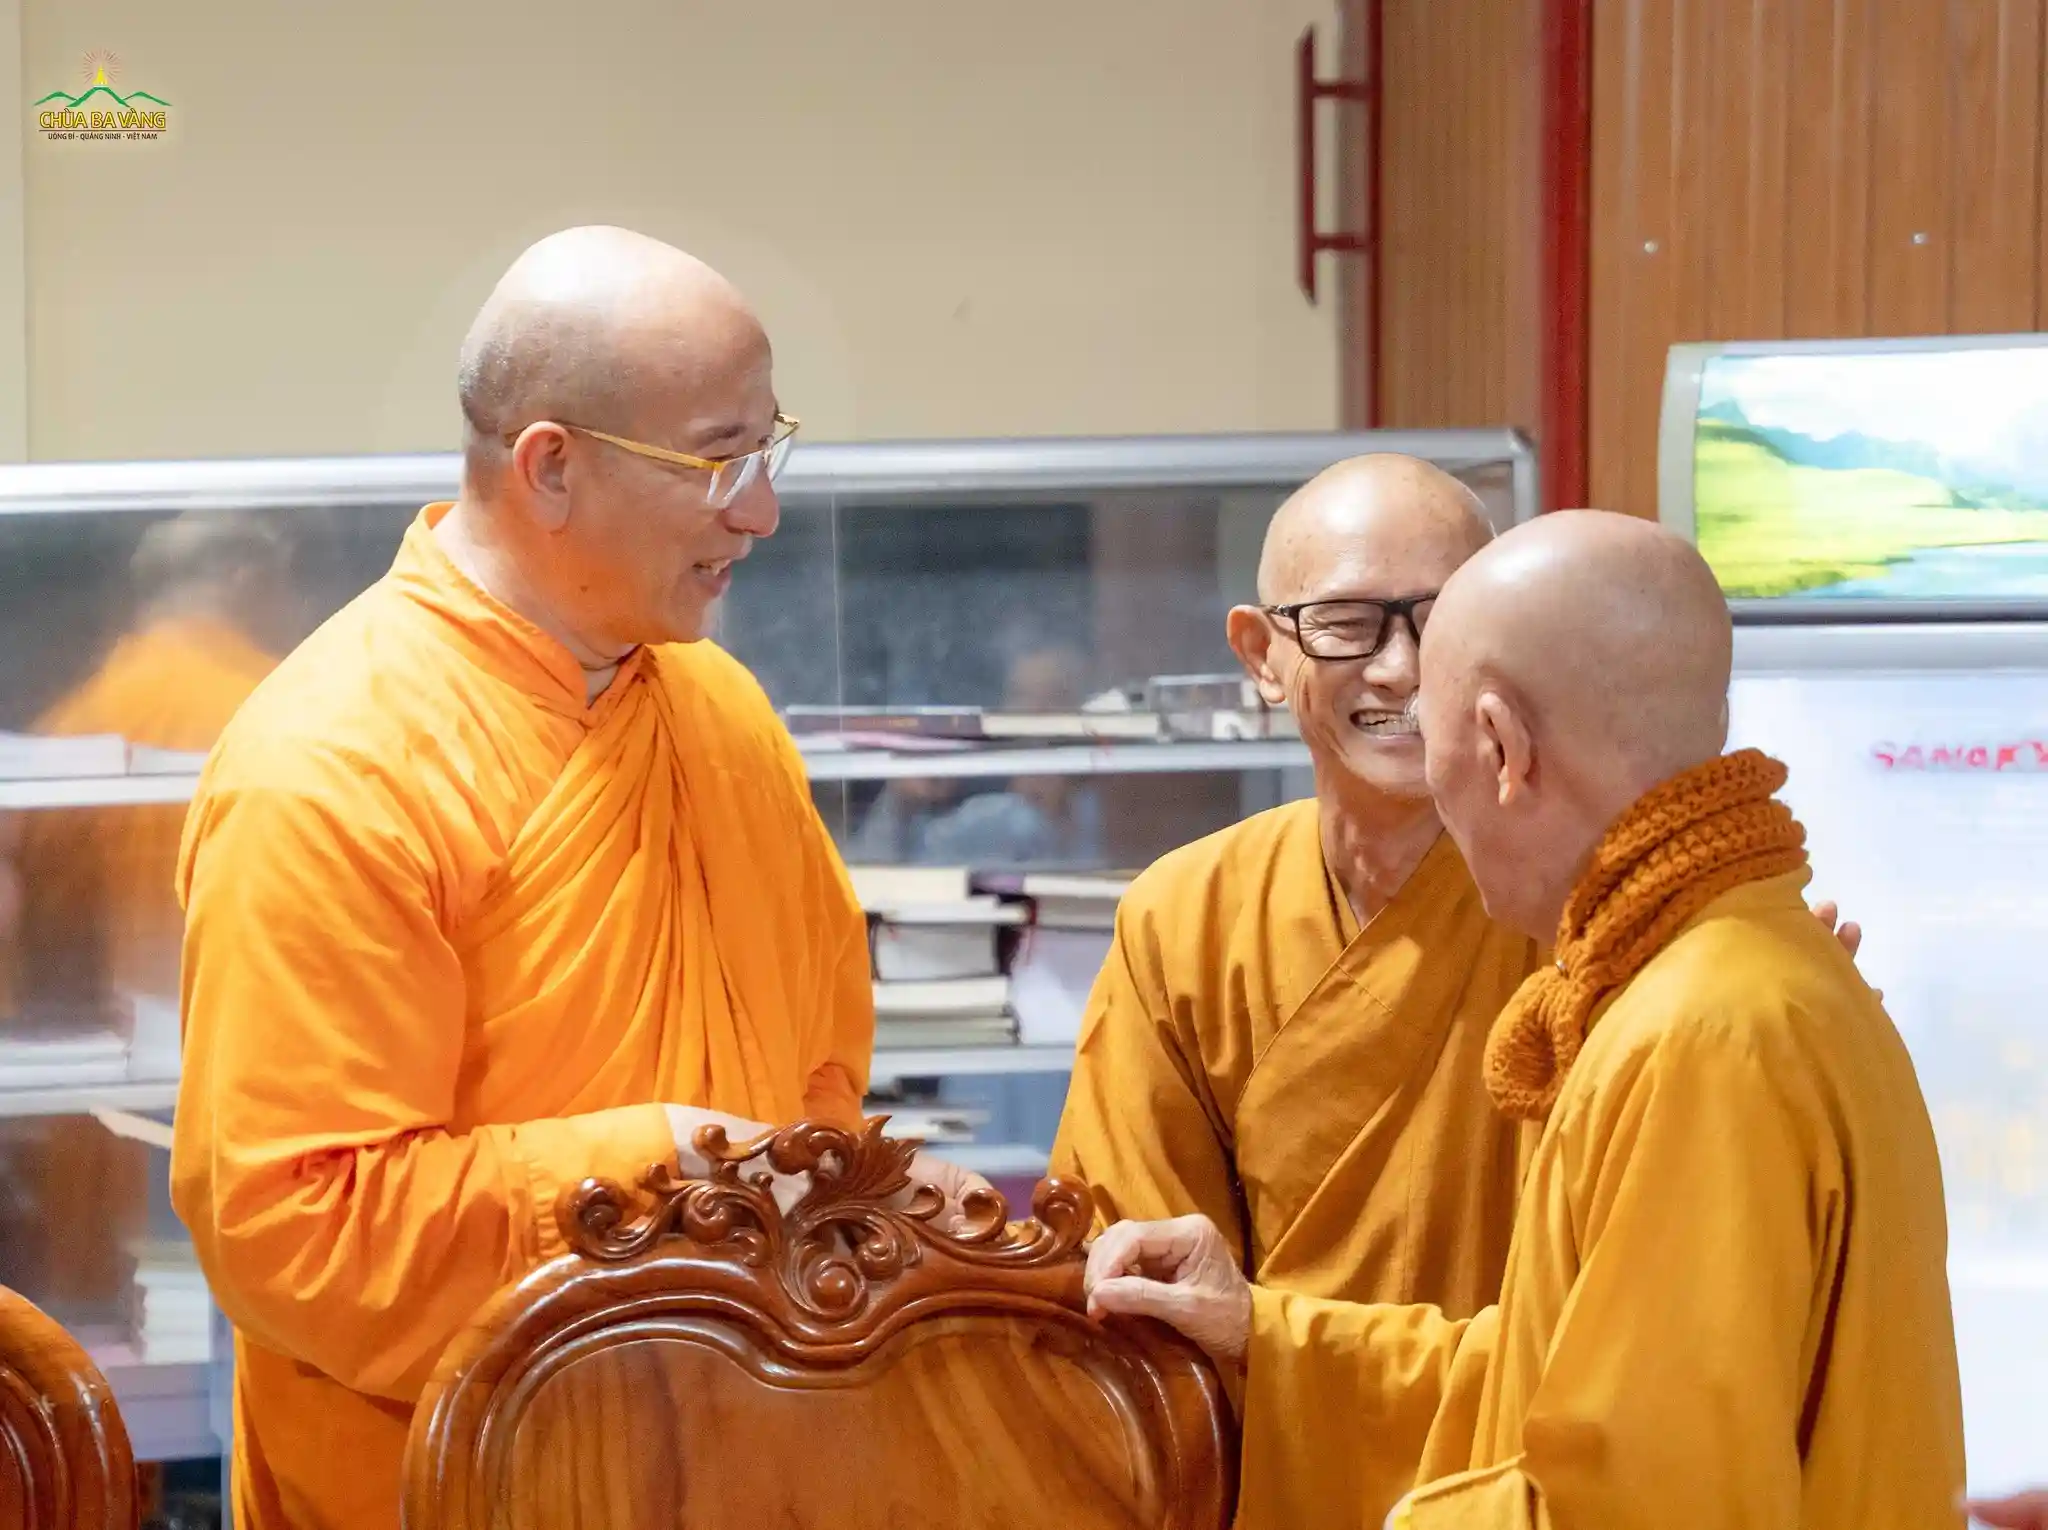 Quý Hòa Thượng tại Thiền viện Chơn Không hoan hỷ trò chuyện cùng Thầy Thích Trúc Thái Minh